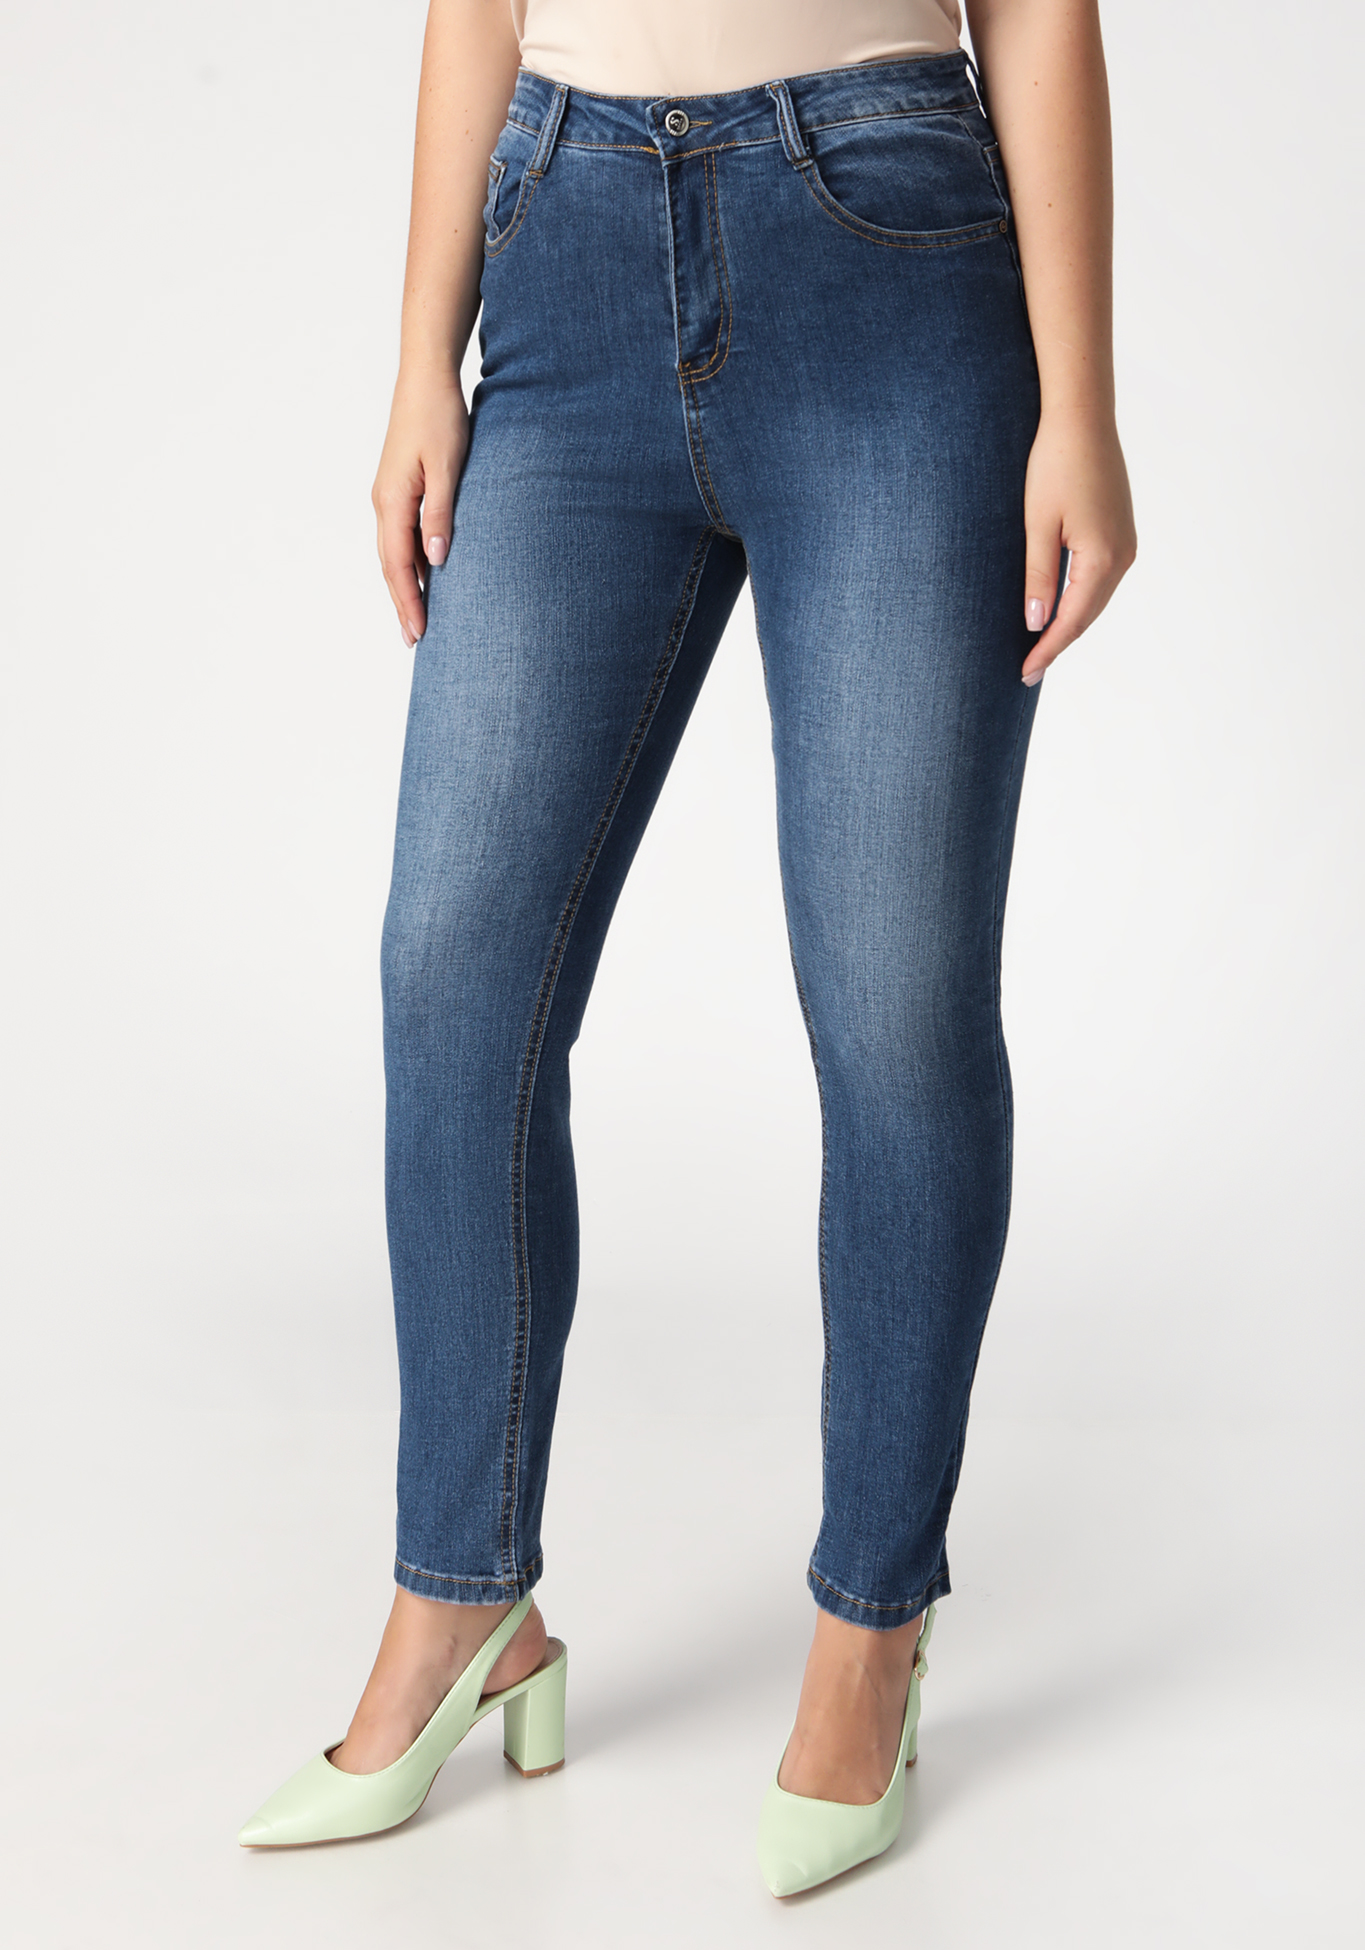 Джинсы "Вечная классика", цвет джинсовый, размер 54